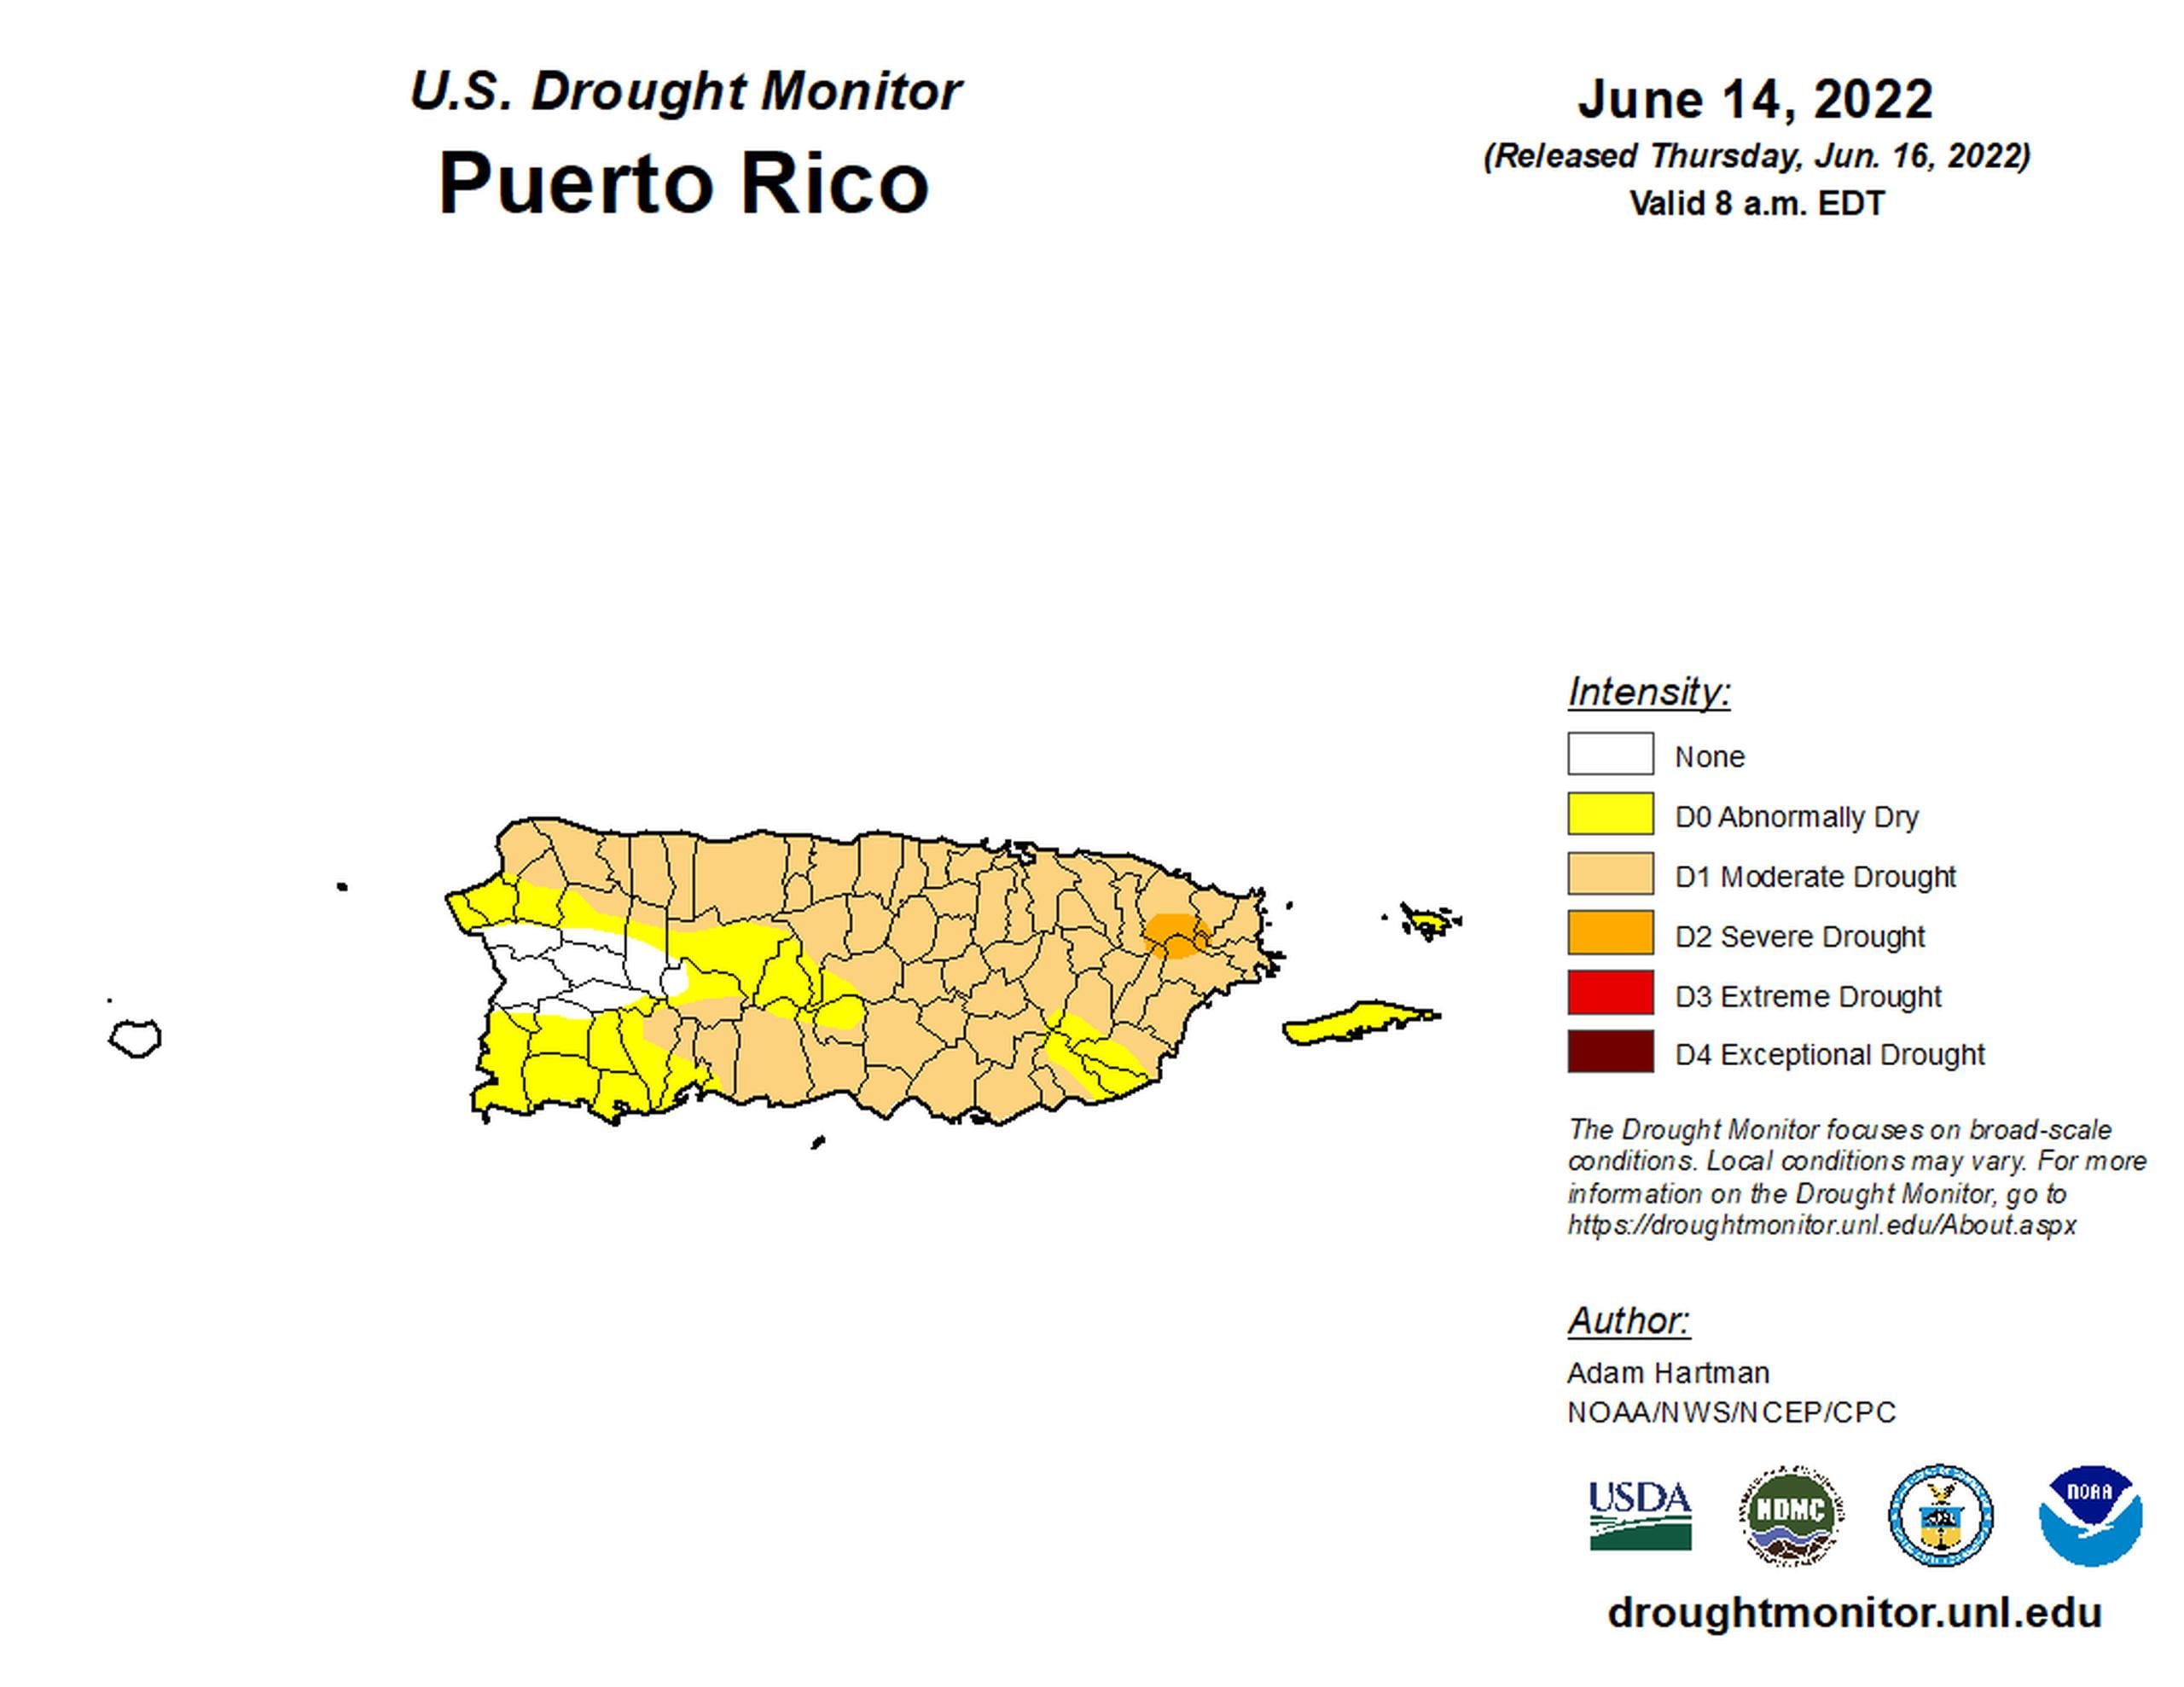 Mapa de la sequía en Puerto Rico publicado el 16 de junio de 2022 con datos del 14 de junio de 2022.